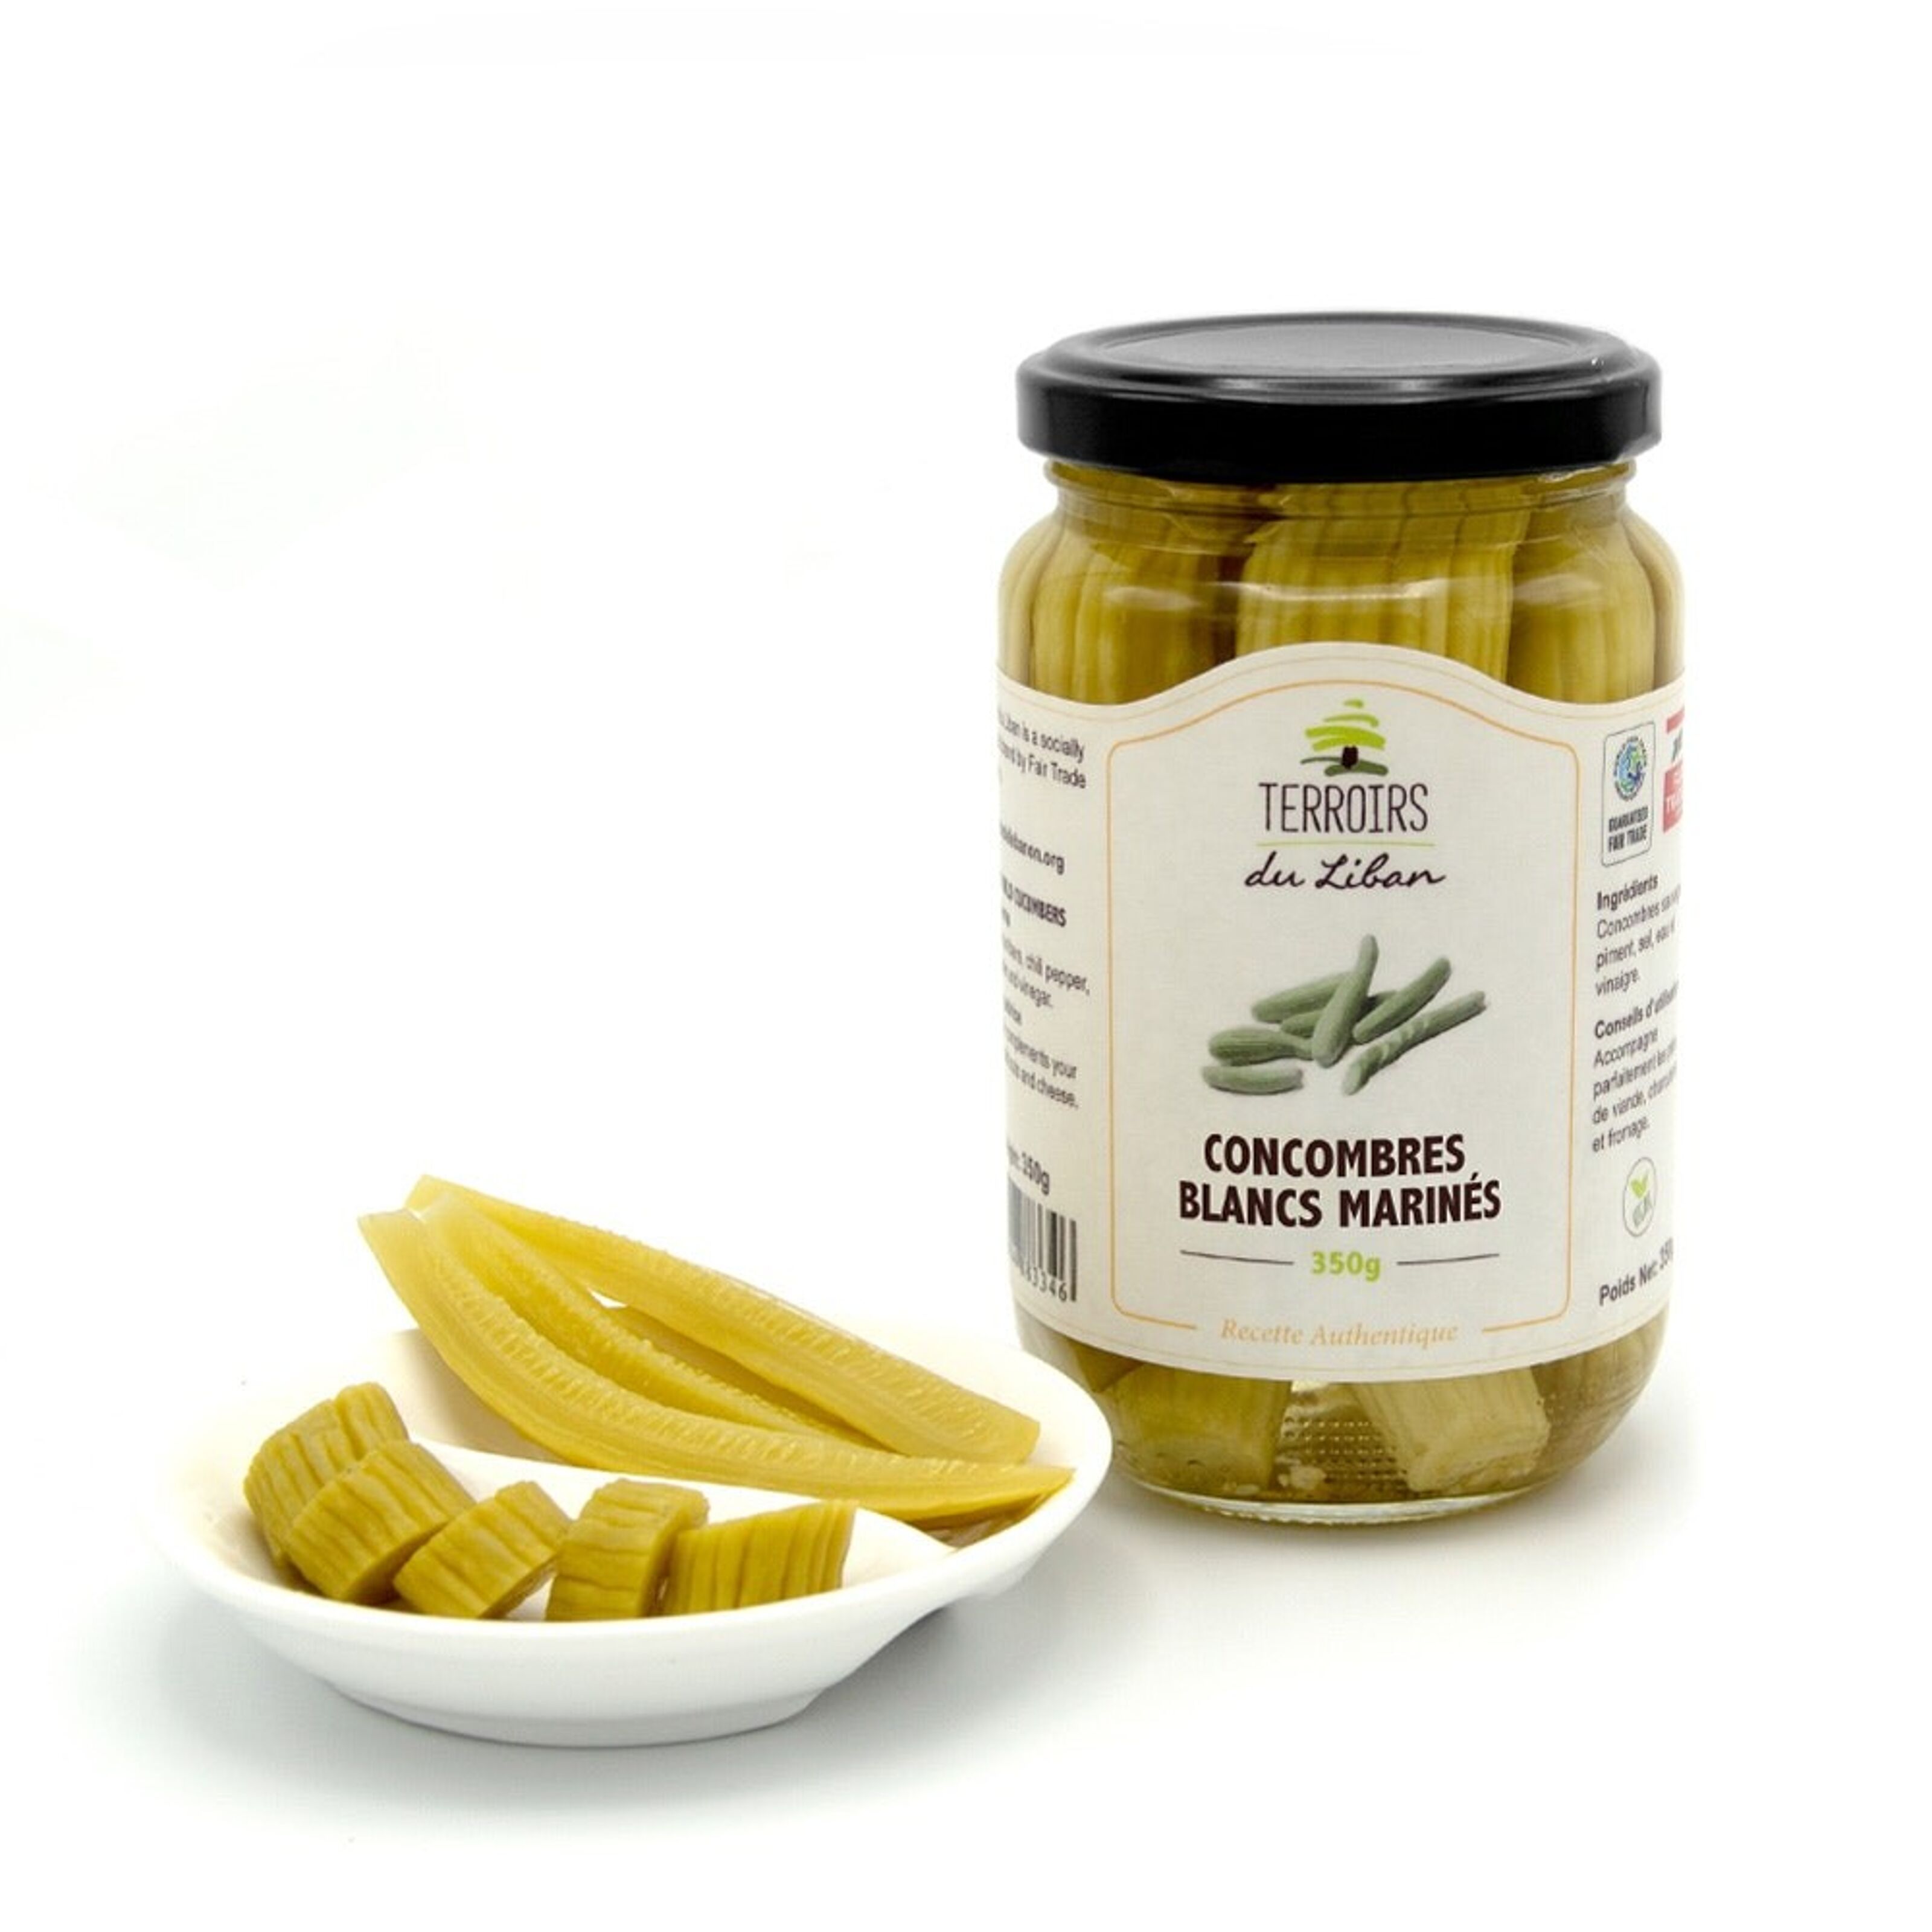 Pain d'épices Vegan - Free The Pickle